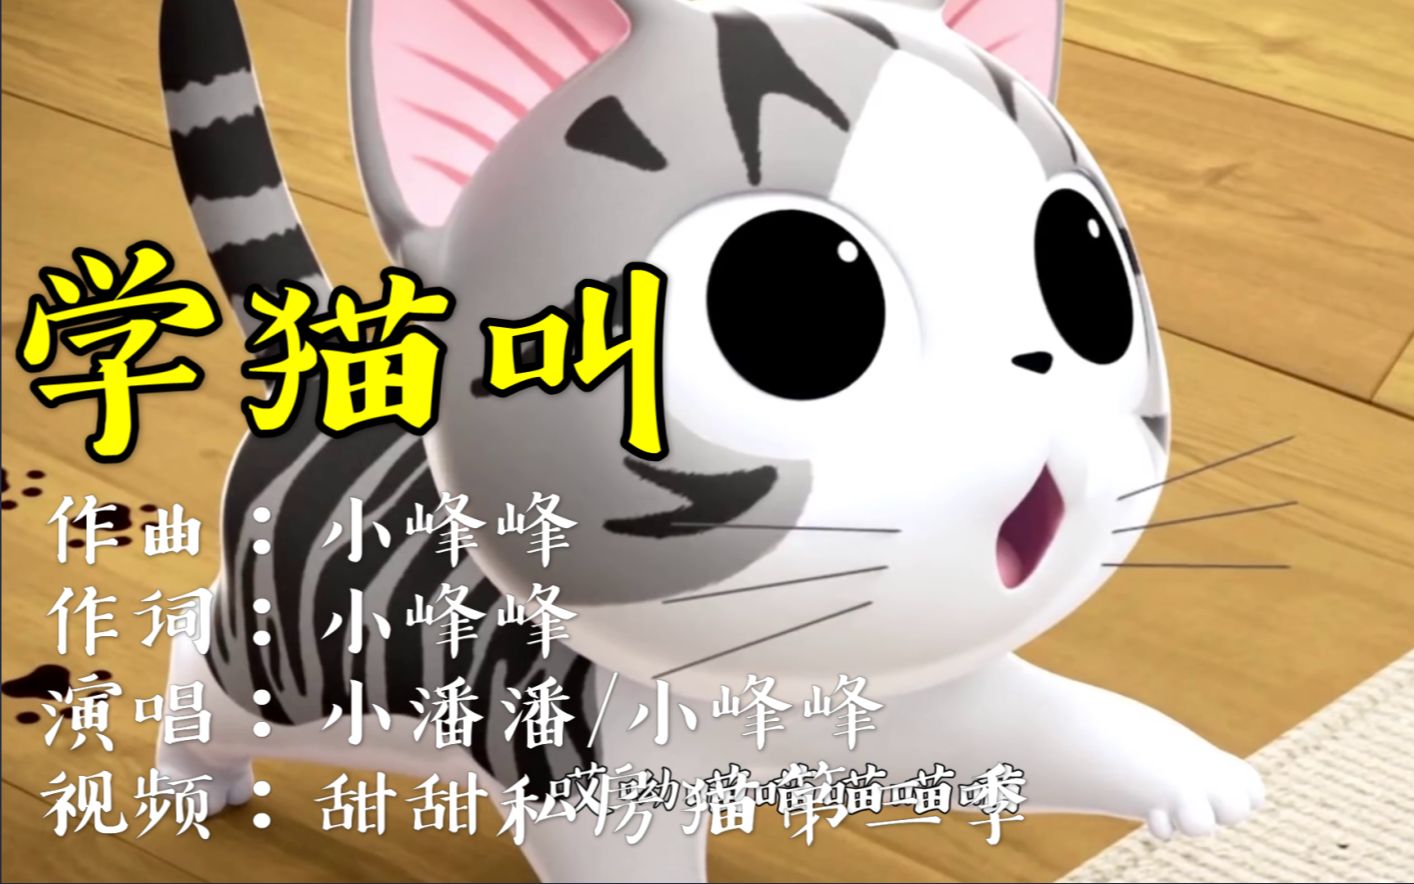 小潘潘小峰峰合唱的一首很可爱的新歌《学猫叫》特好听!